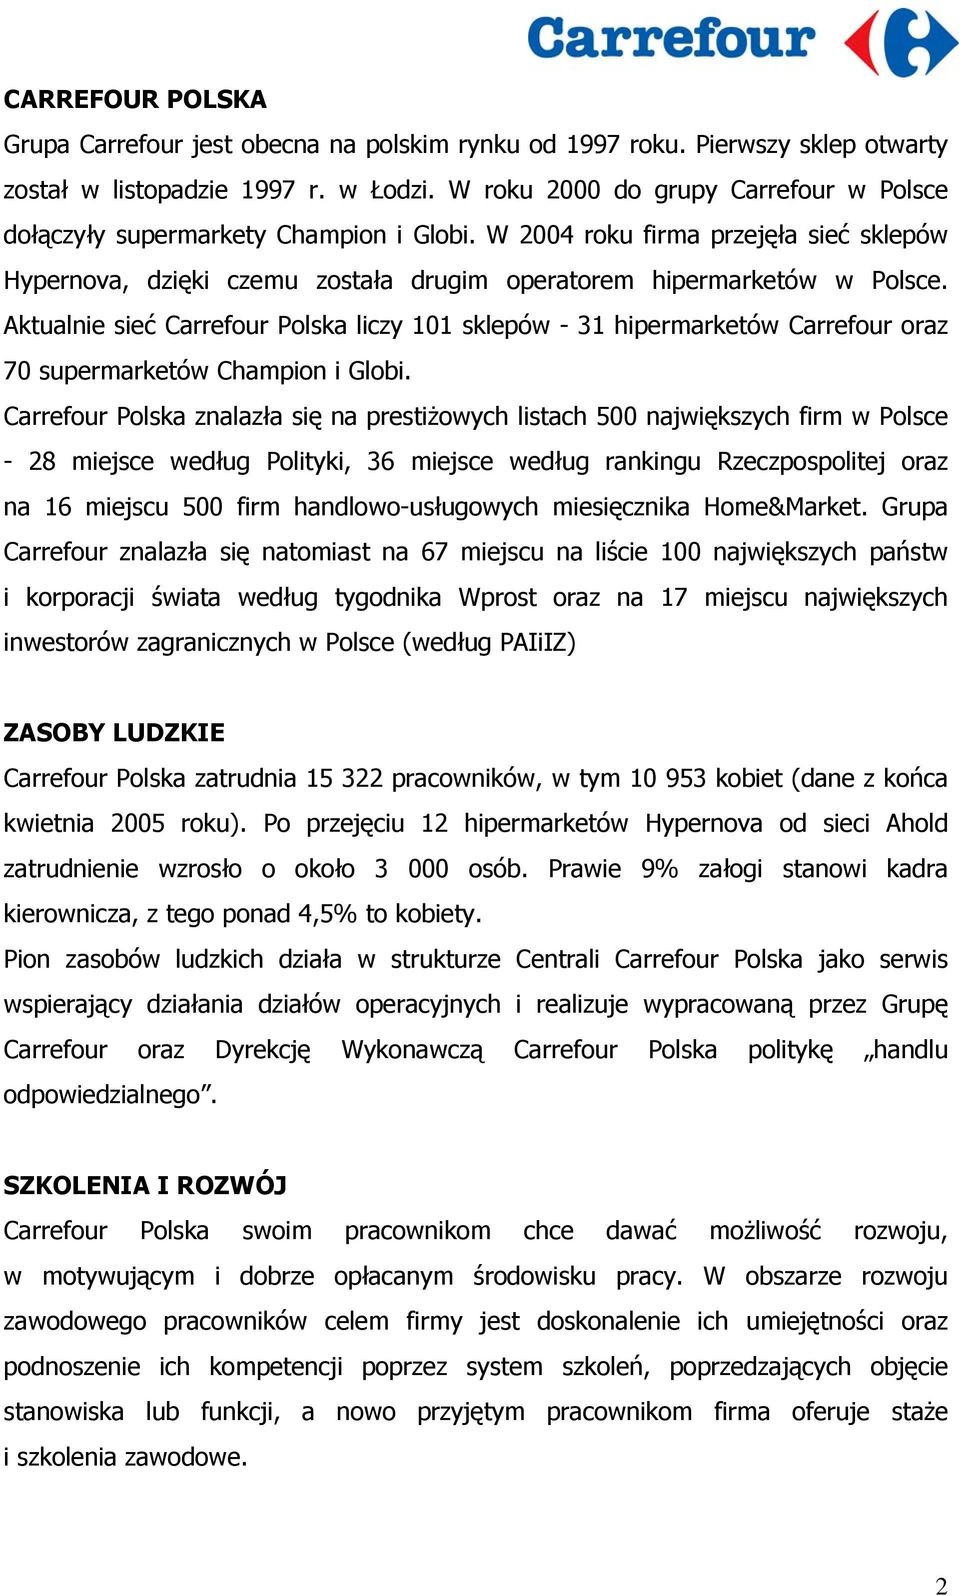 Aktualnie sieć Carrefour Polska liczy 101 sklepów - 31 hipermarketów Carrefour oraz 70 supermarketów Champion i Globi.